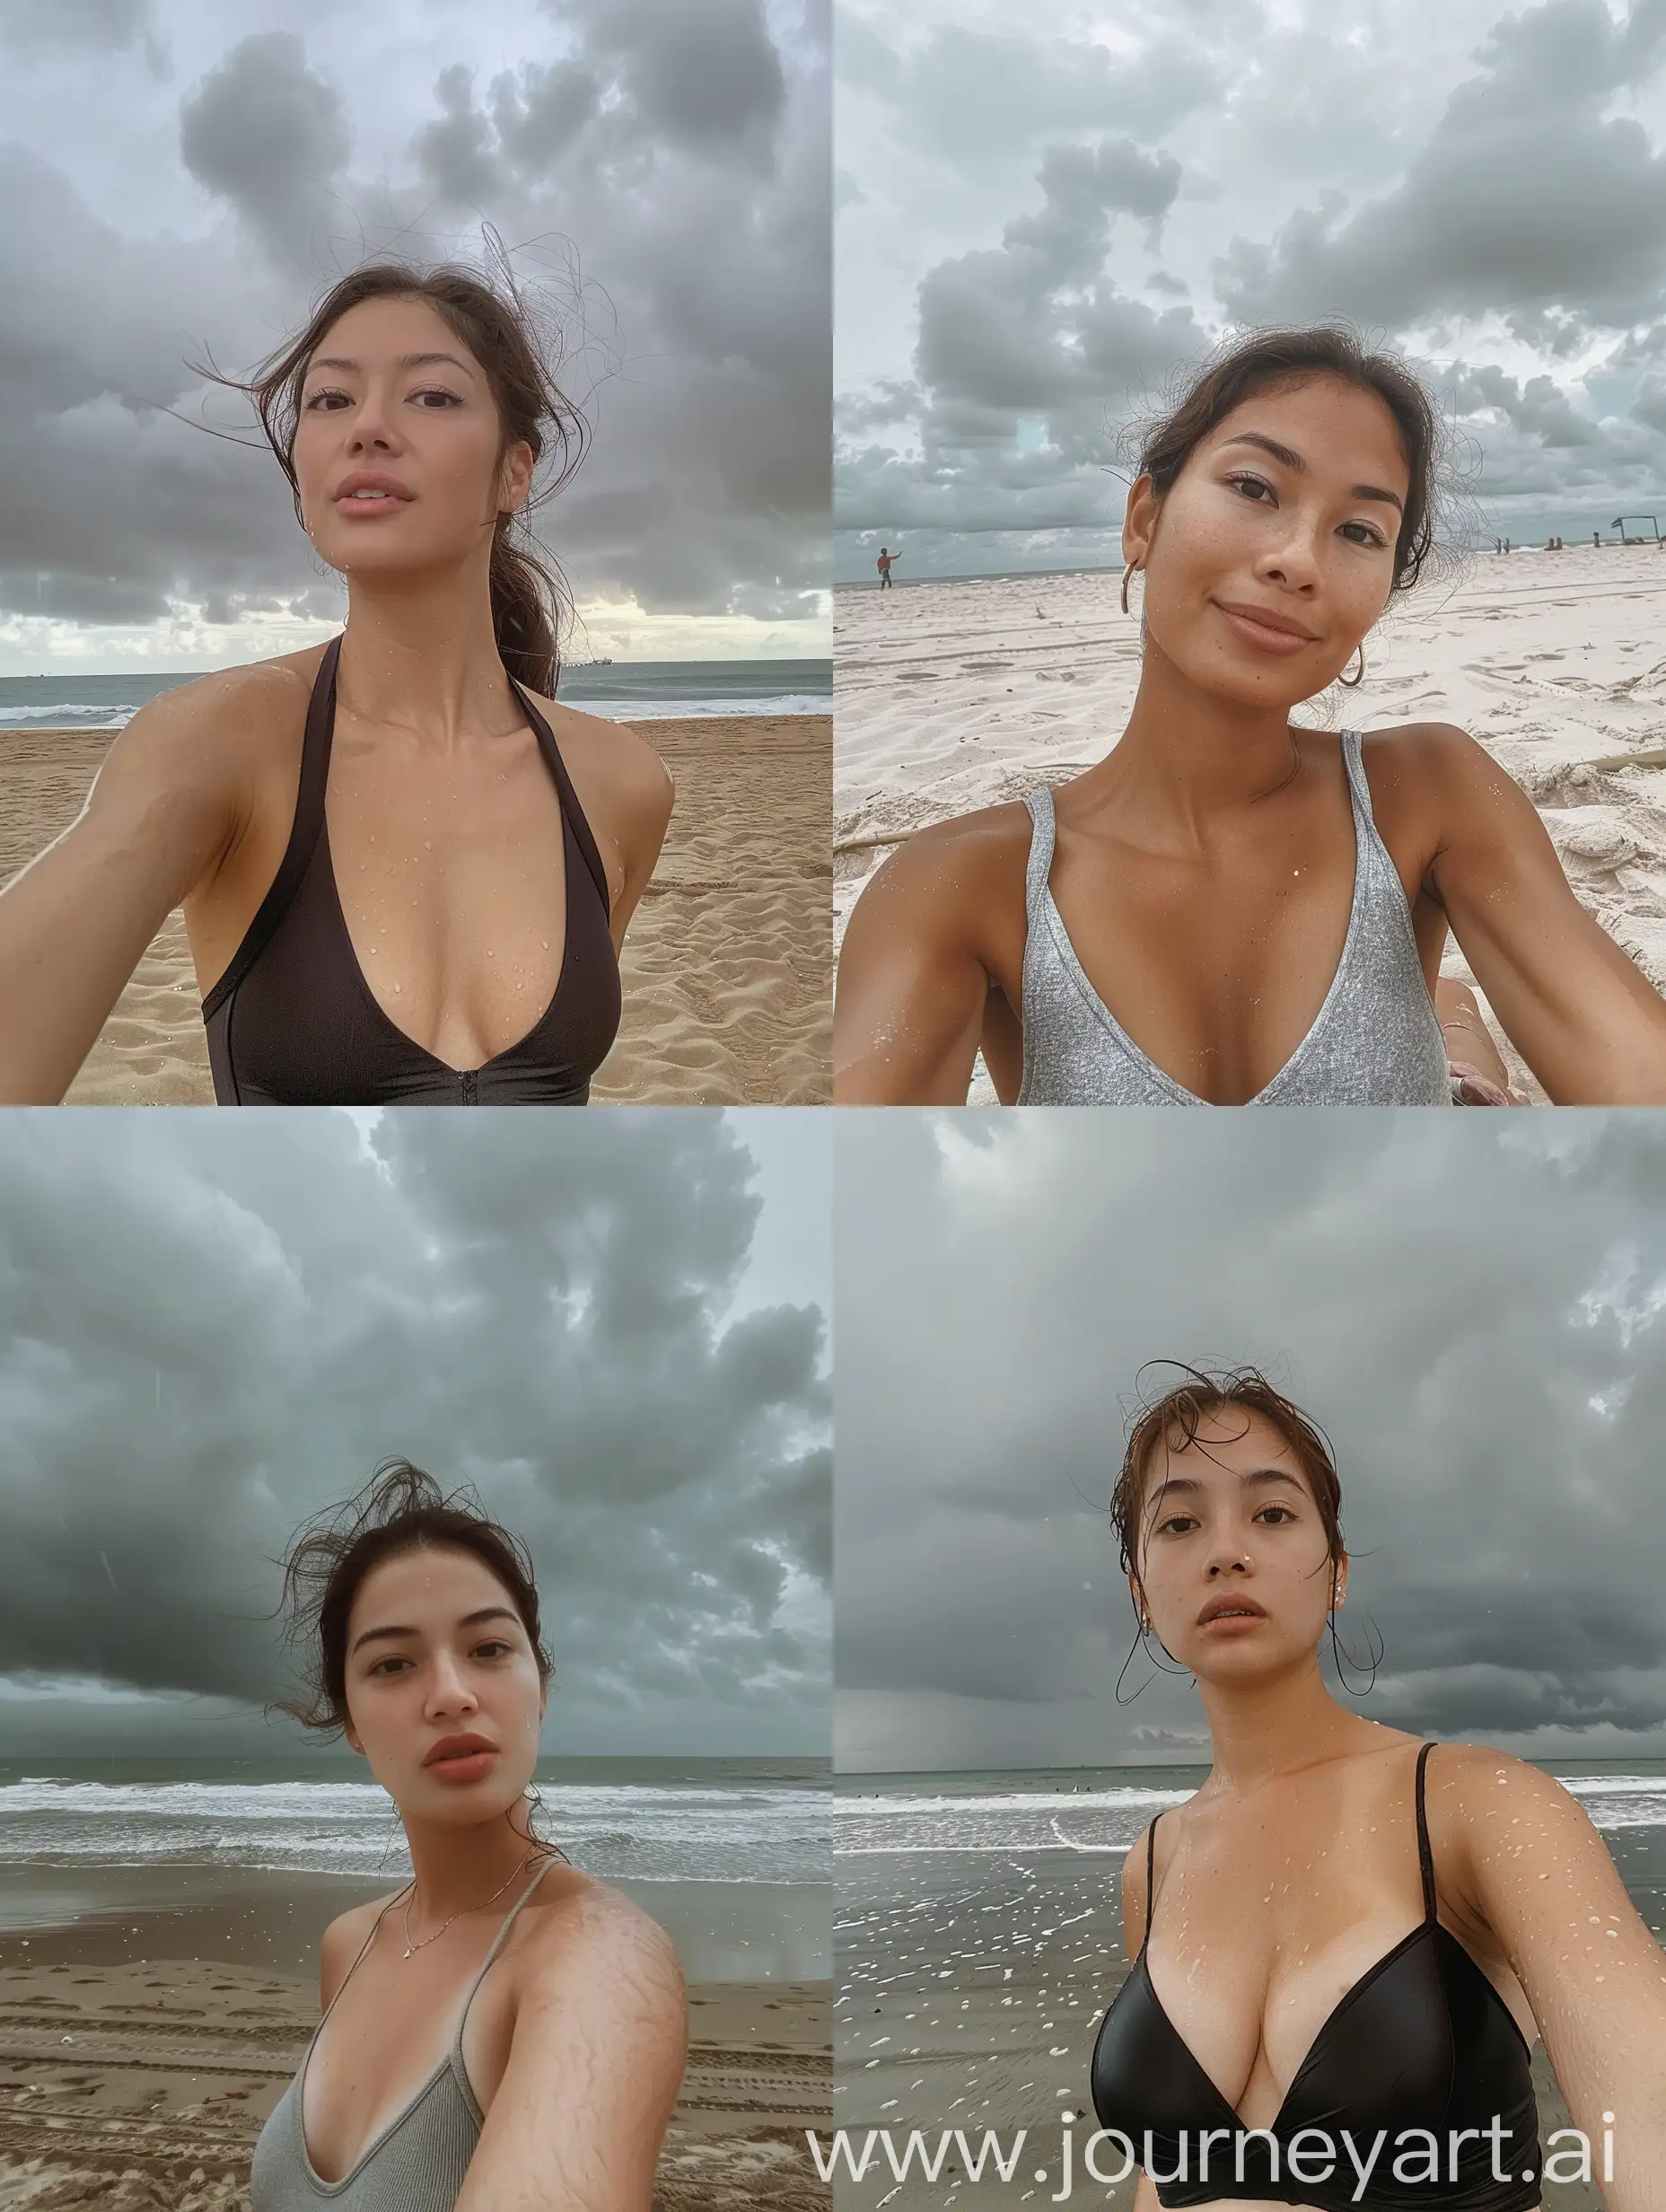 SpanishFilipino-Womans-Beach-Selfie-under-Overcast-Sky